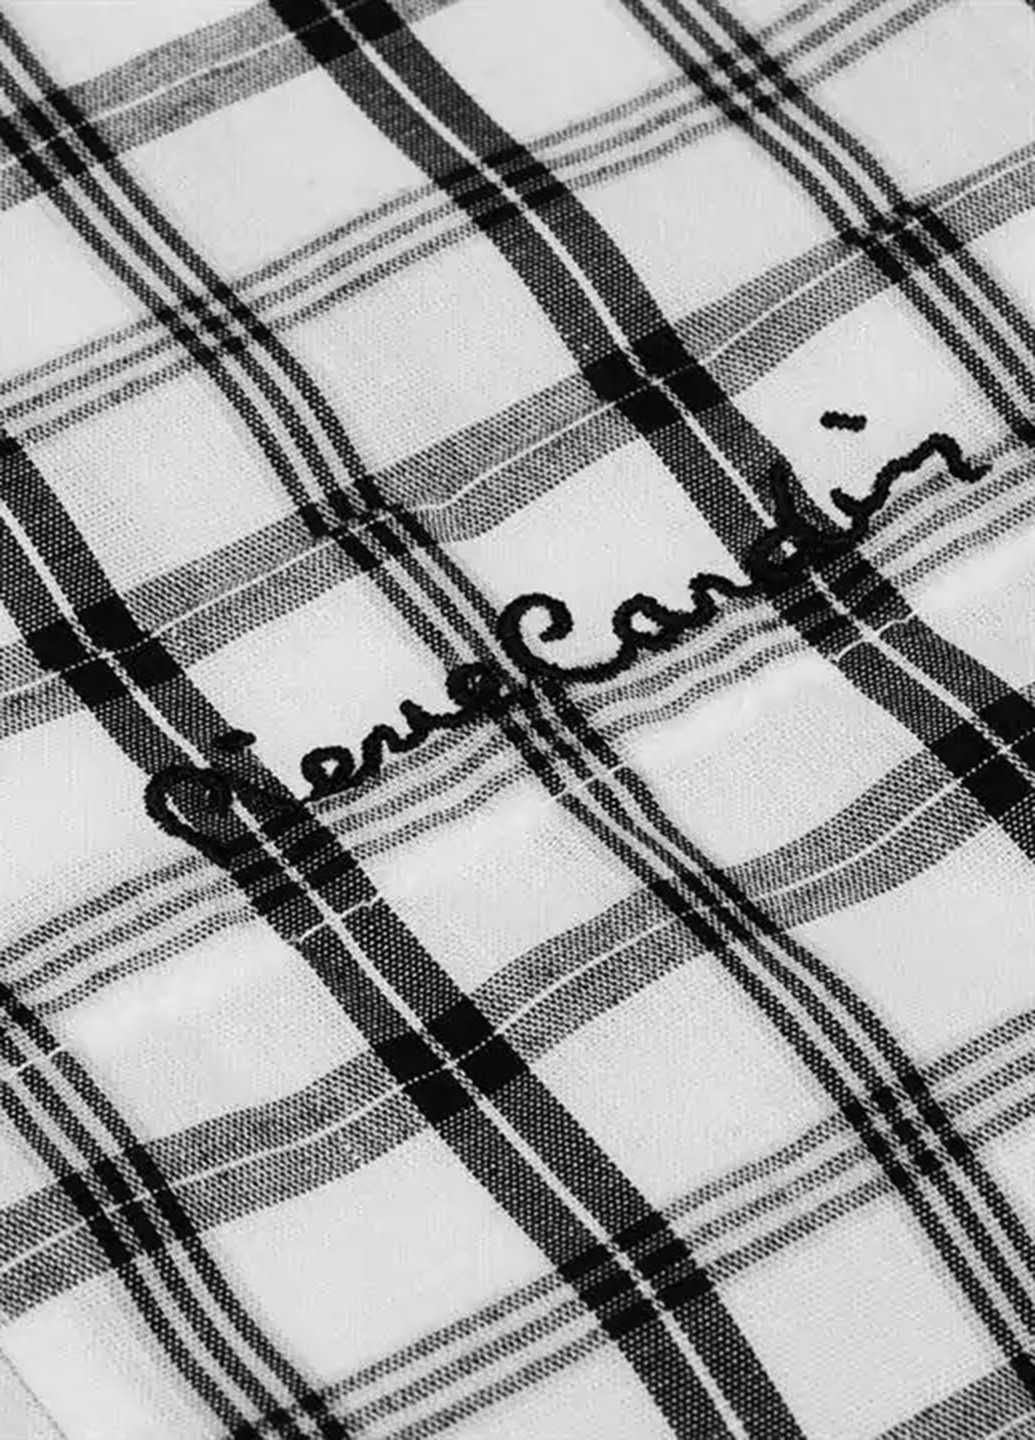 Белая кэжуал рубашка в клетку Pierre Cardin с коротким рукавом